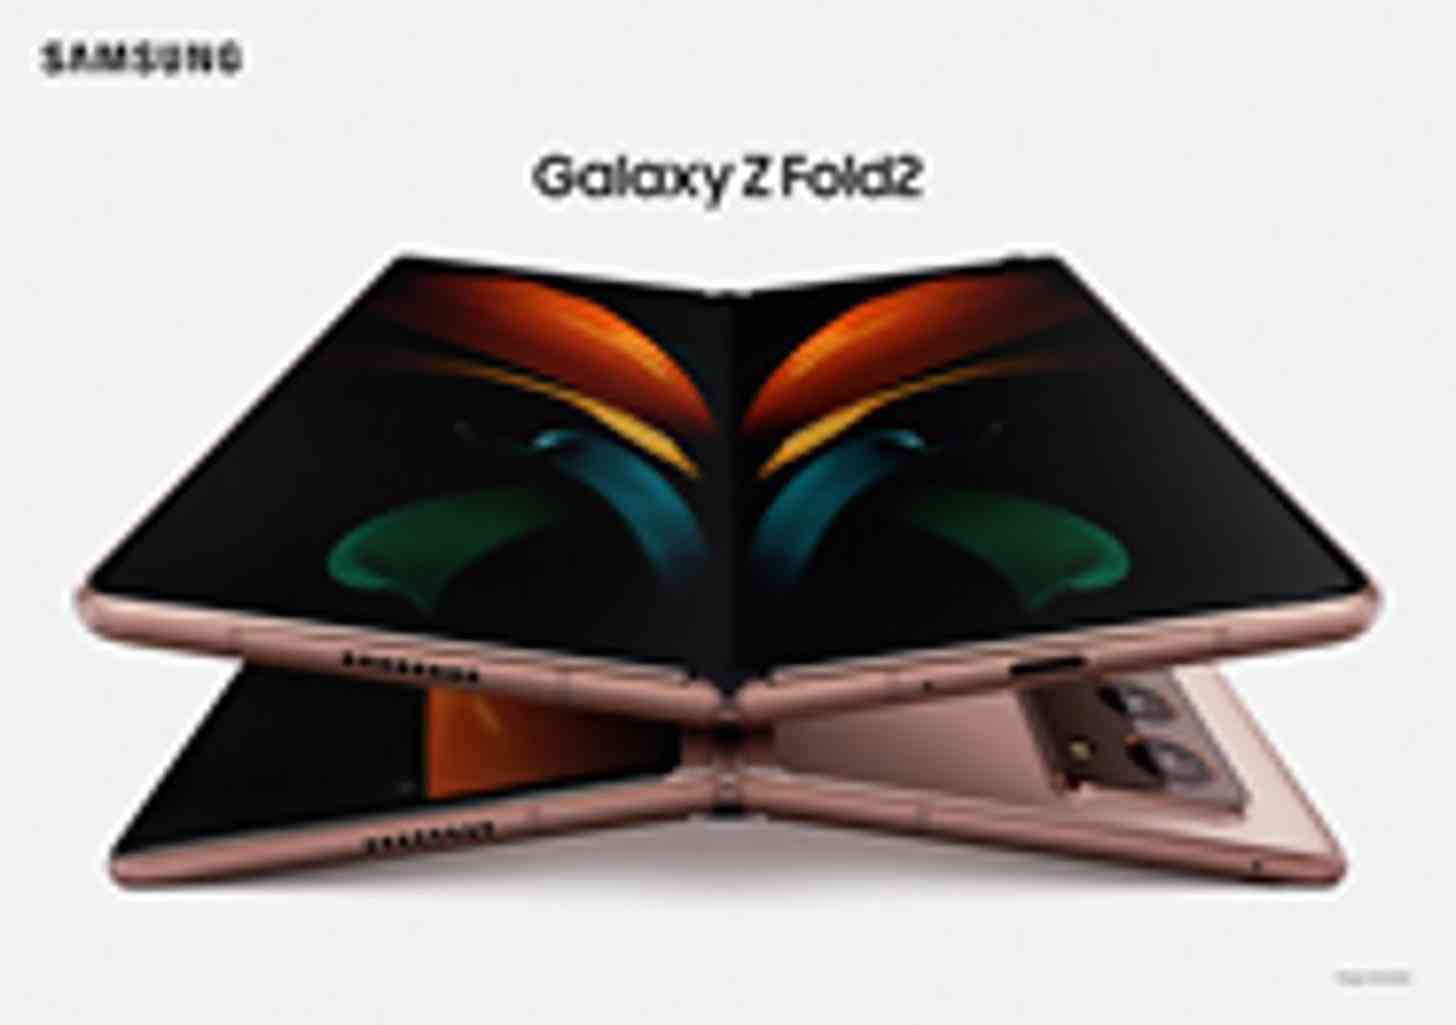 Samsung Galaxy Z Fold 2 leak